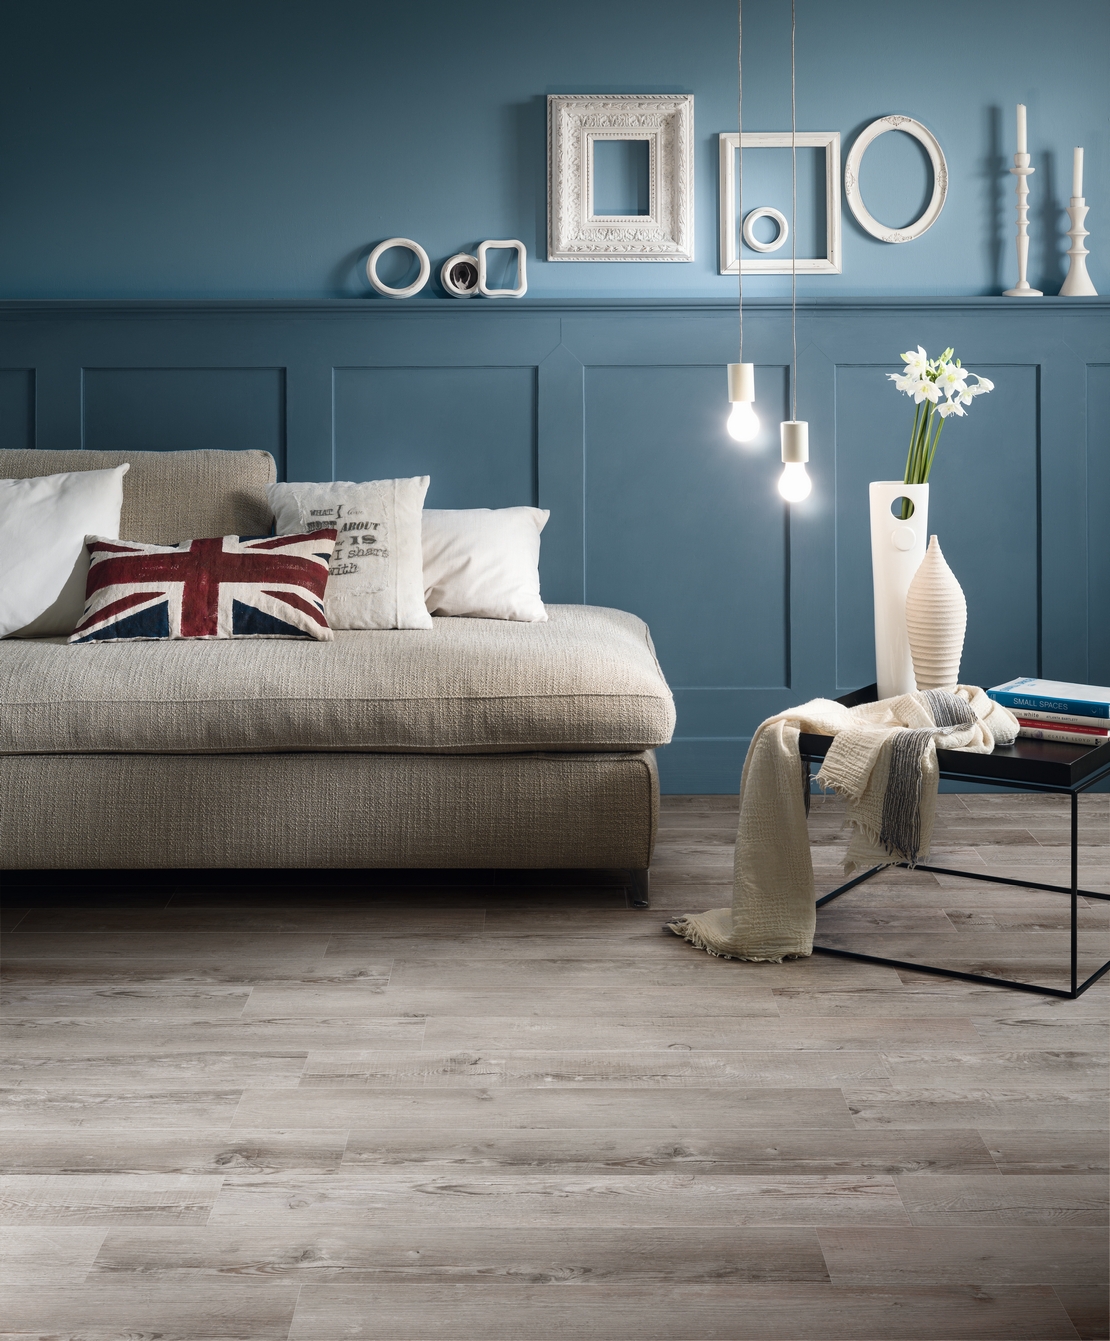 Chambre classique grise et bleue, sol moderne en PVC style industriel. - Inspirations Iperceramica